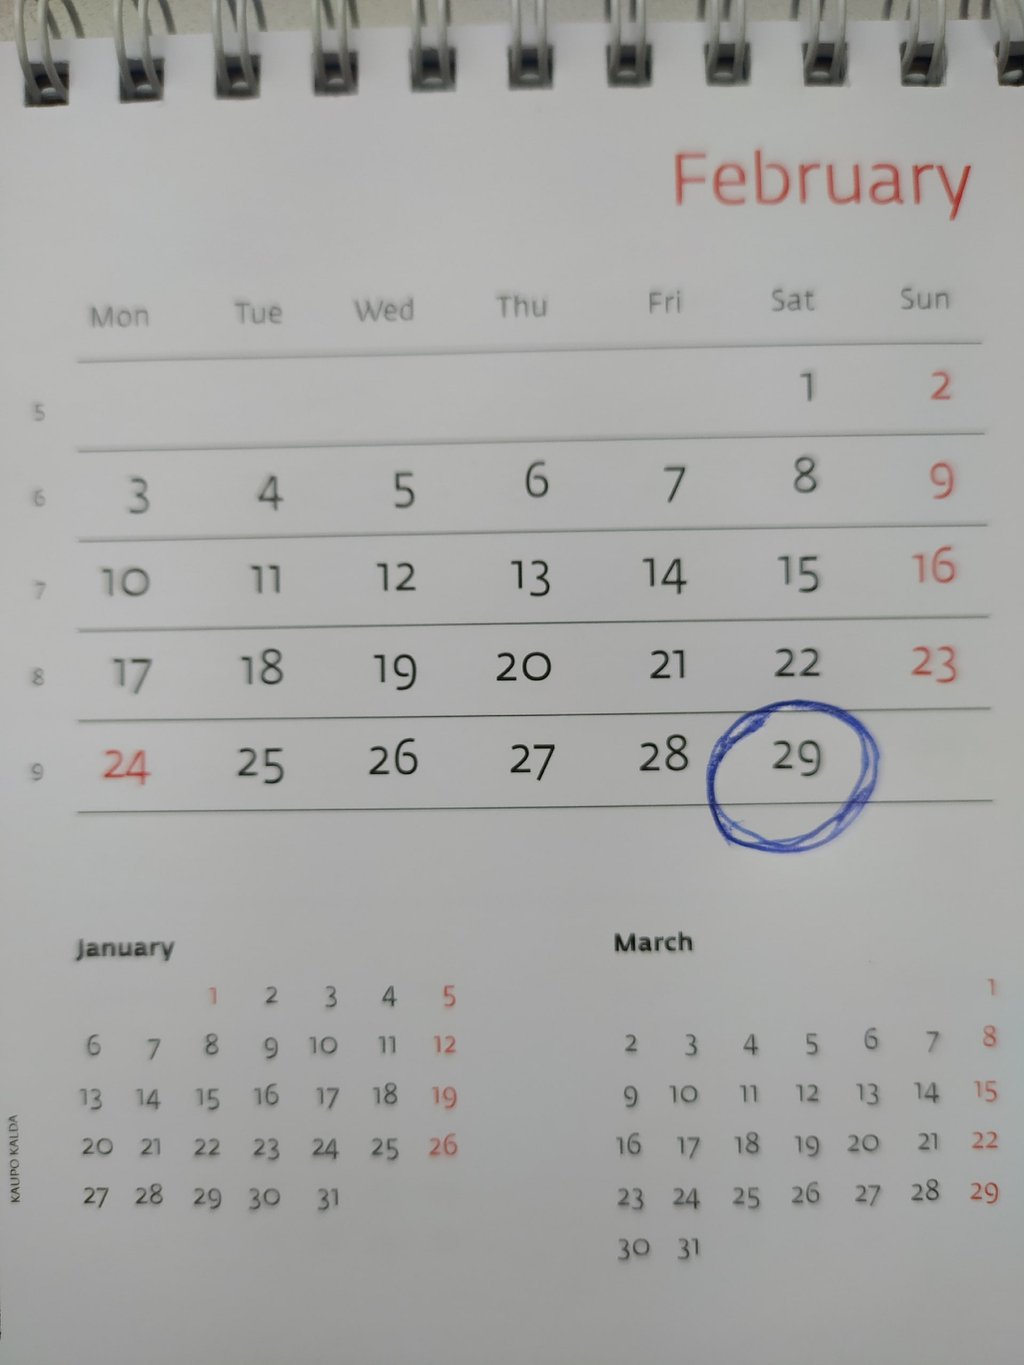 Сегодня – 29 февраля, единственный день, который отсутствует в невисокосном году.